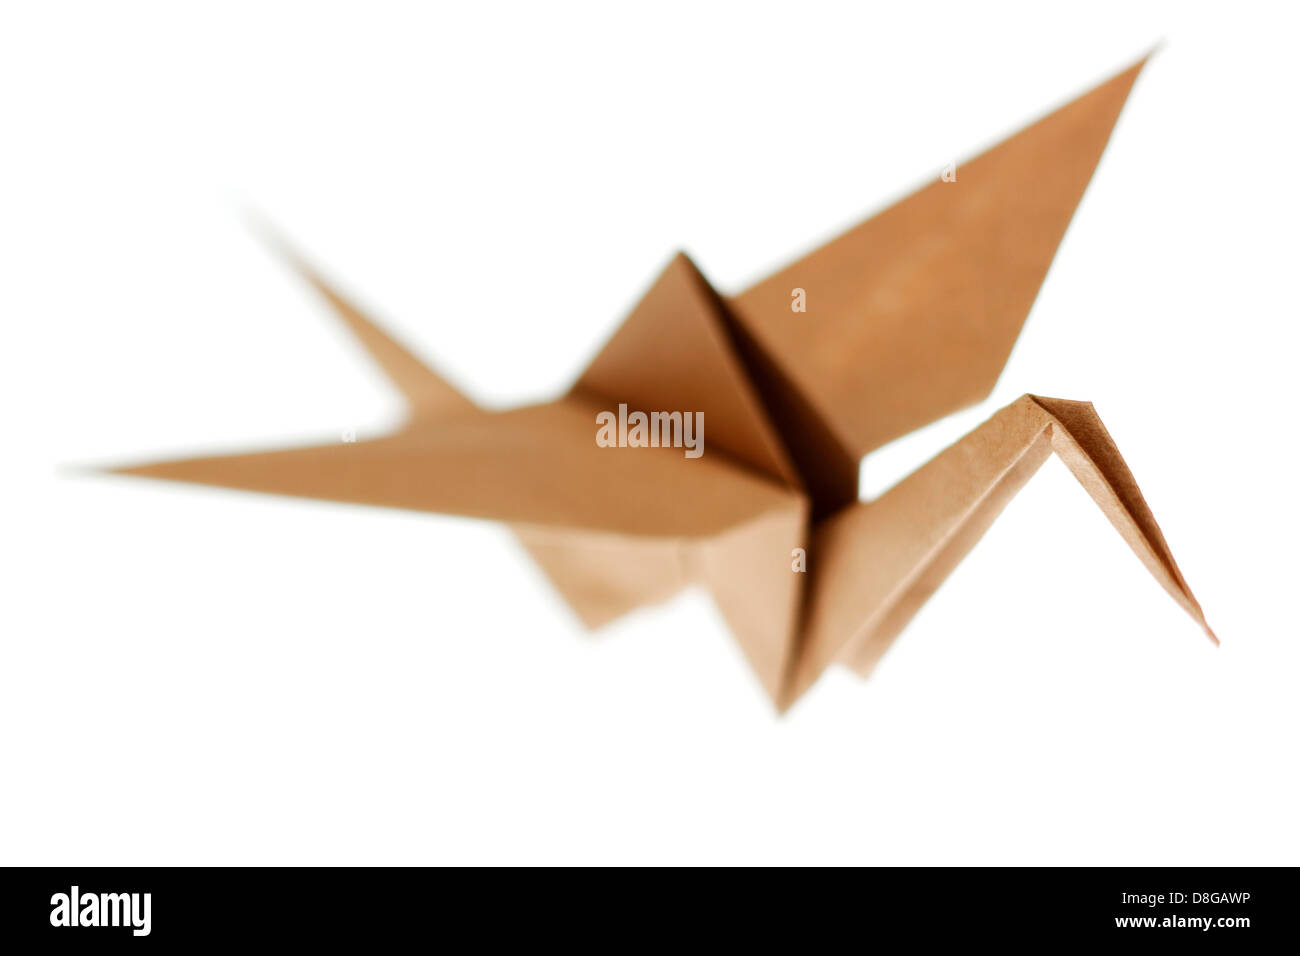 Oiseau grue Origami fabriqués à partir de papier recyclé brun. Isolé sur fond blanc Banque D'Images